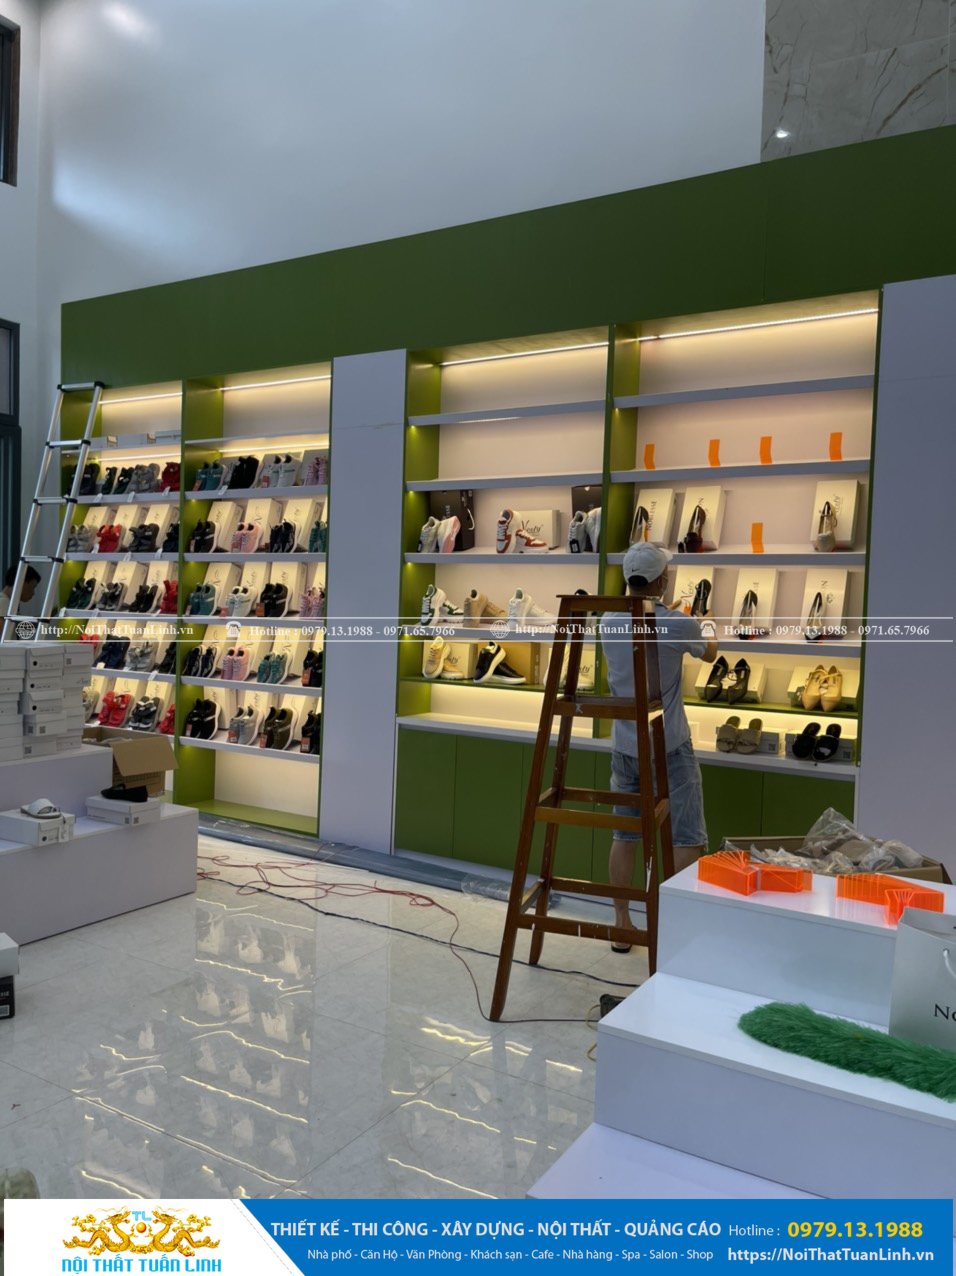 Báo giá thiết kế thi công nội thất shop thời trang Minh Khang Sport tại Phú Giáo Bình Dương 27